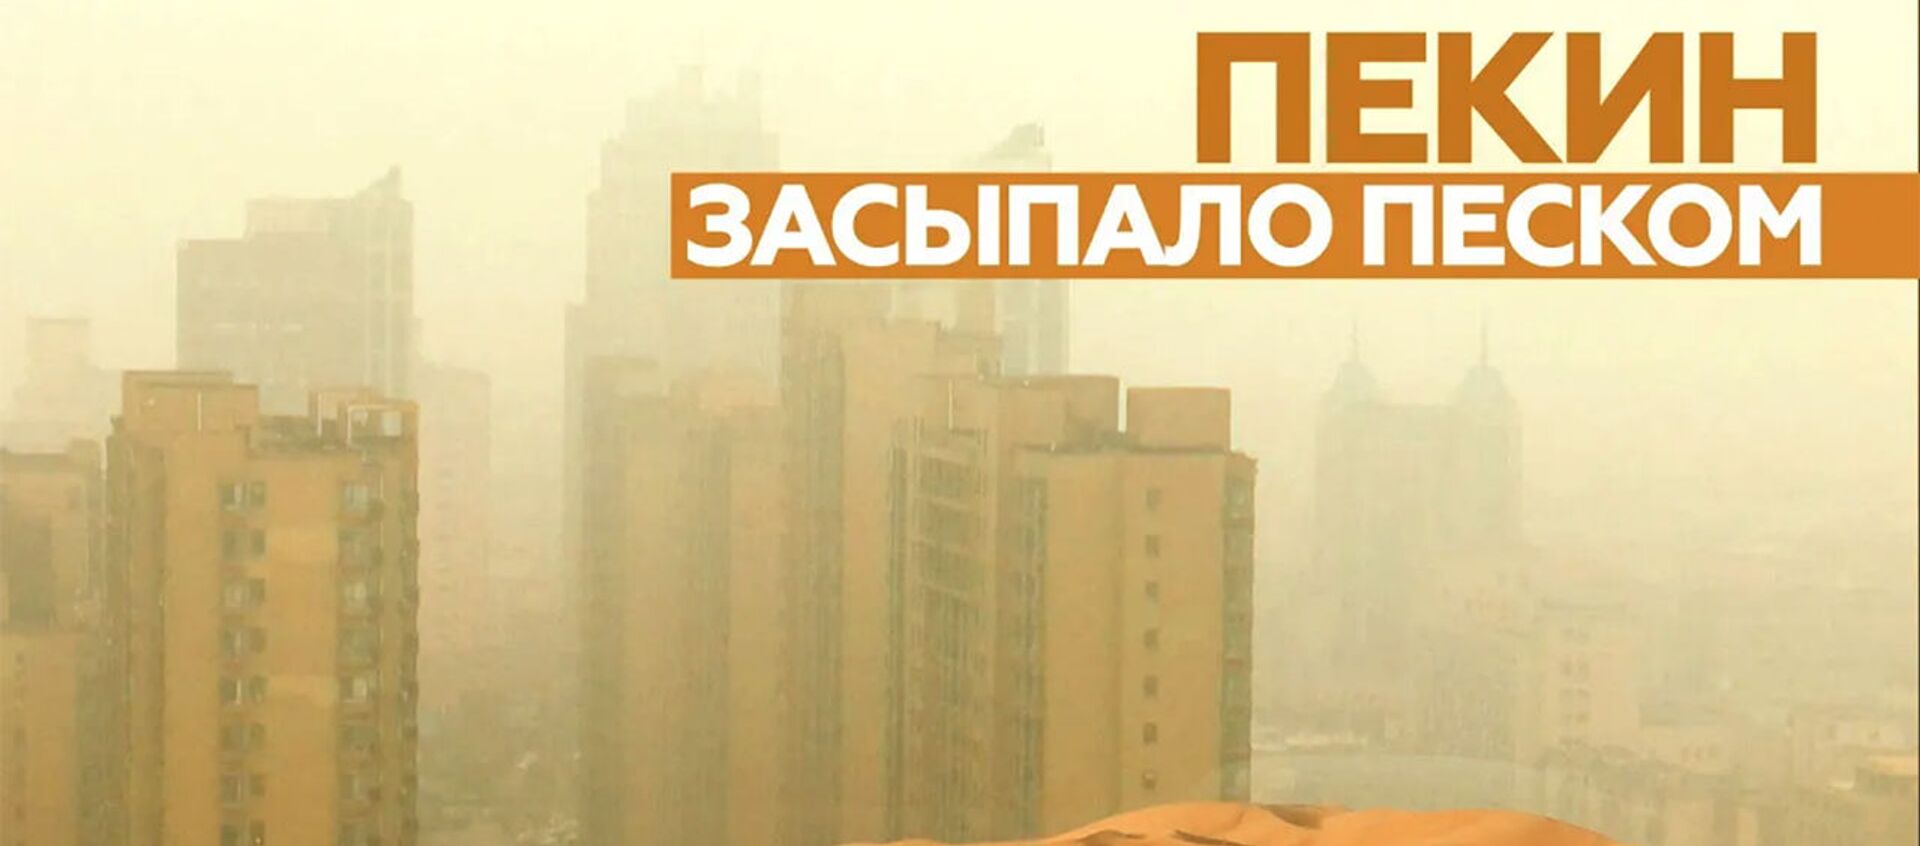 Отмены авиарейсов, пробки и загрязнение воздуха: на Китай обрушилась сильнейшая песчаная буря - Sputnik Армения, 1920, 15.03.2021